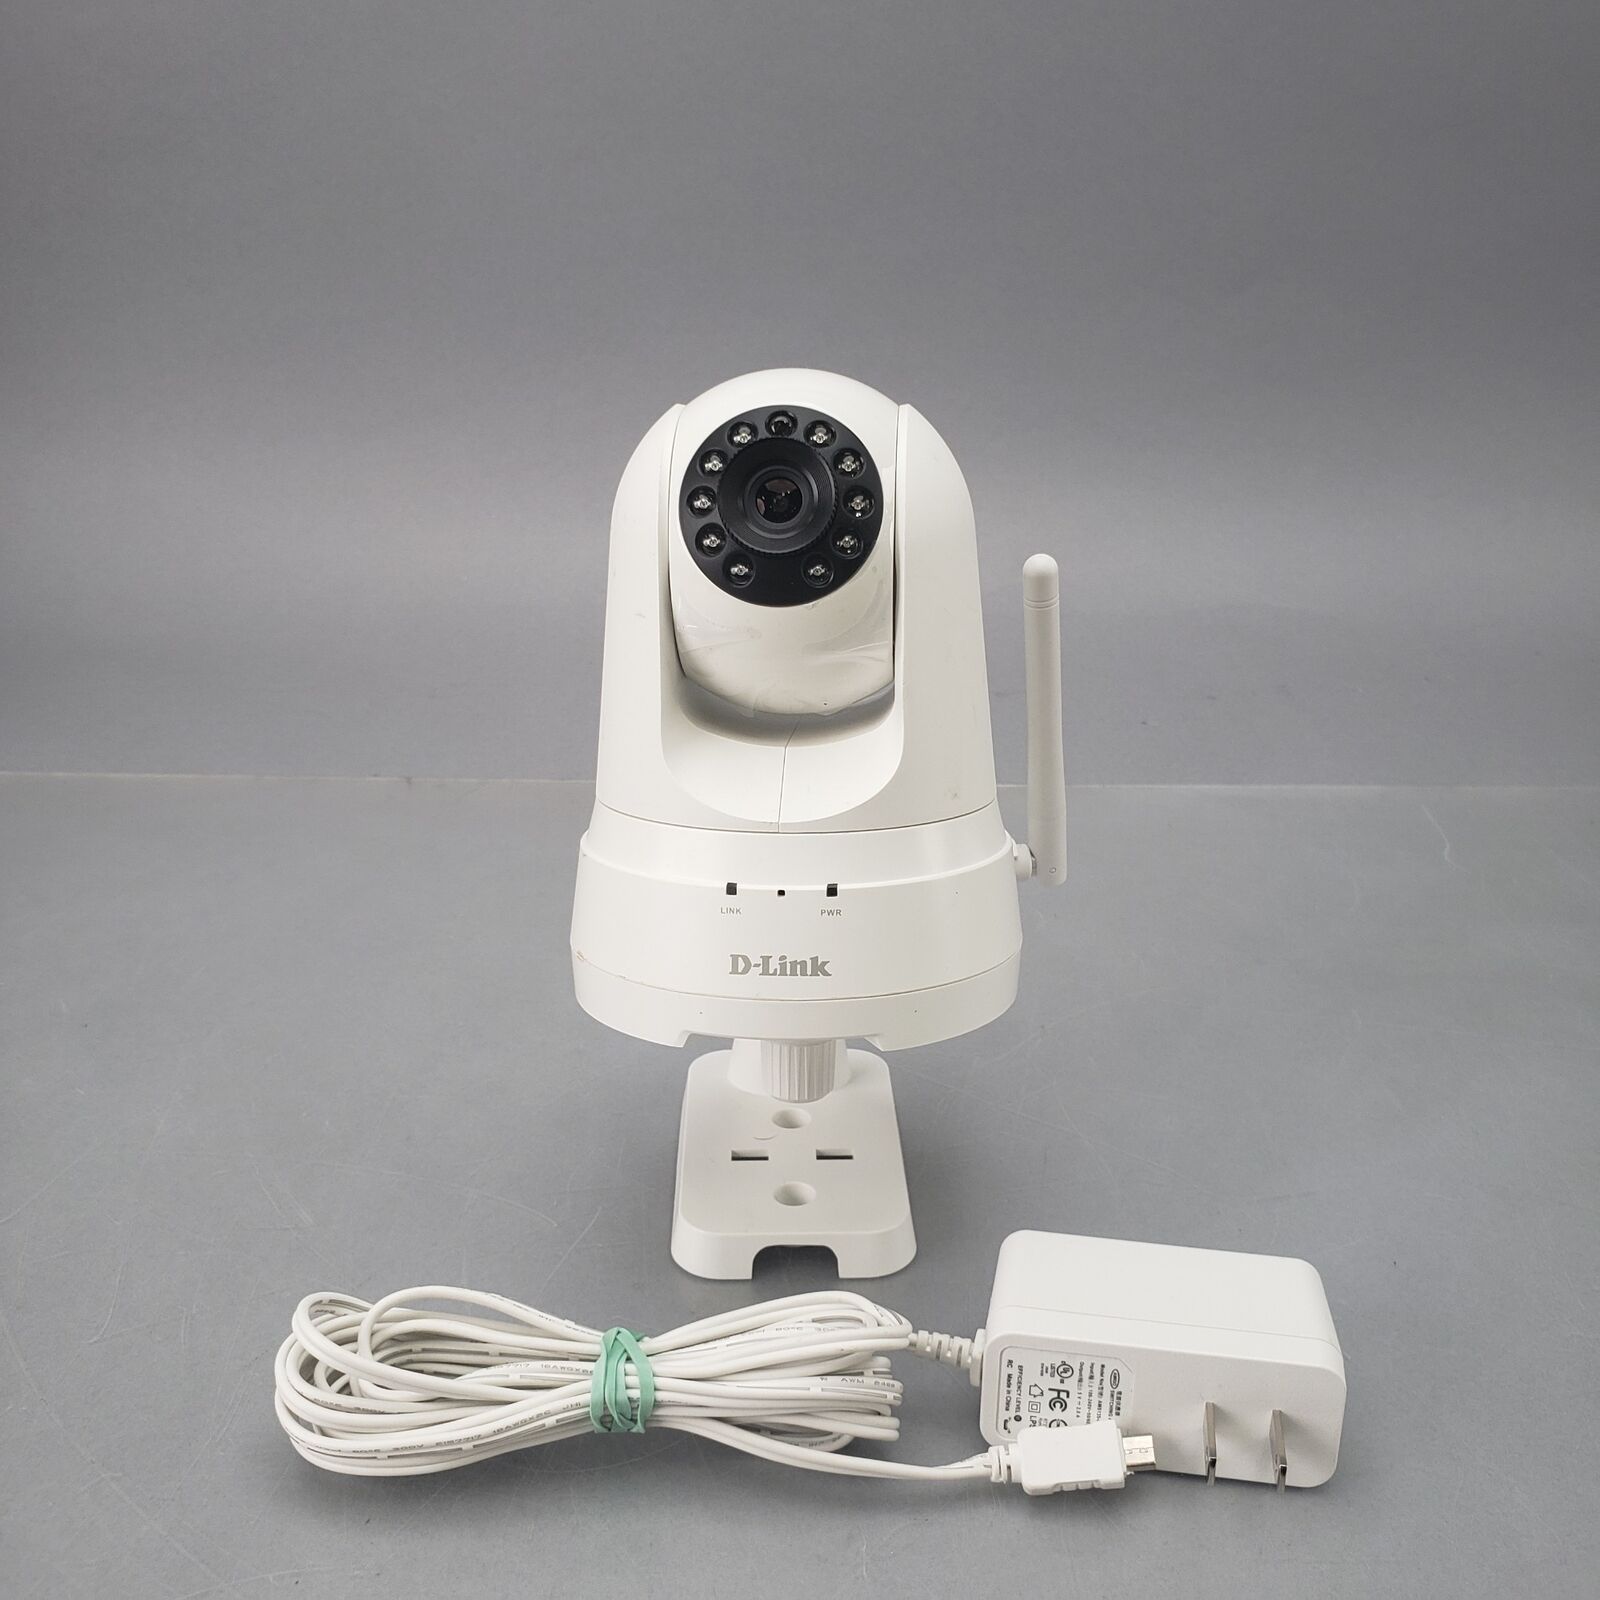 D-Link DCS-8525LHA1 Pan and Tilt WiFi Security Camera